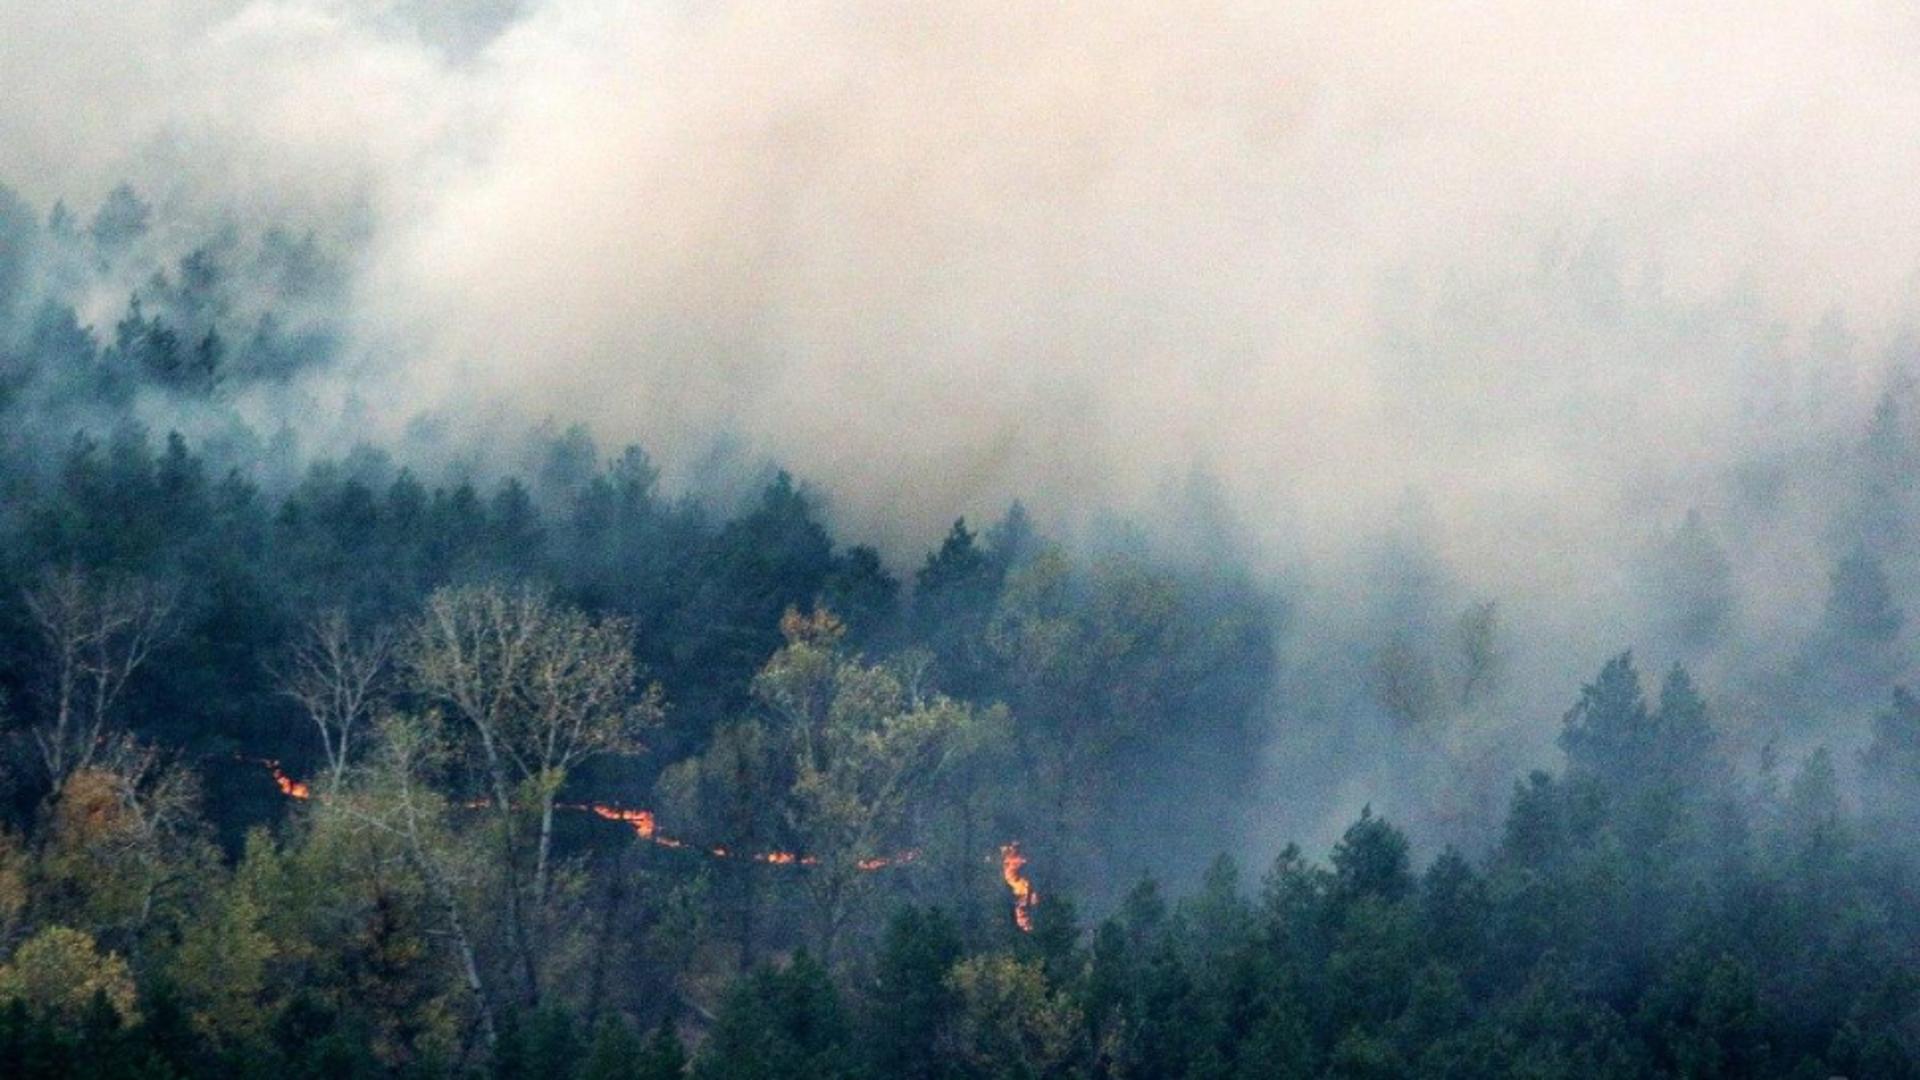 Incendii URIAȘE la pădurile din apropierea zonei Cernobîl: PERICOL iminent - Autoritățile române implicate în monitorizare